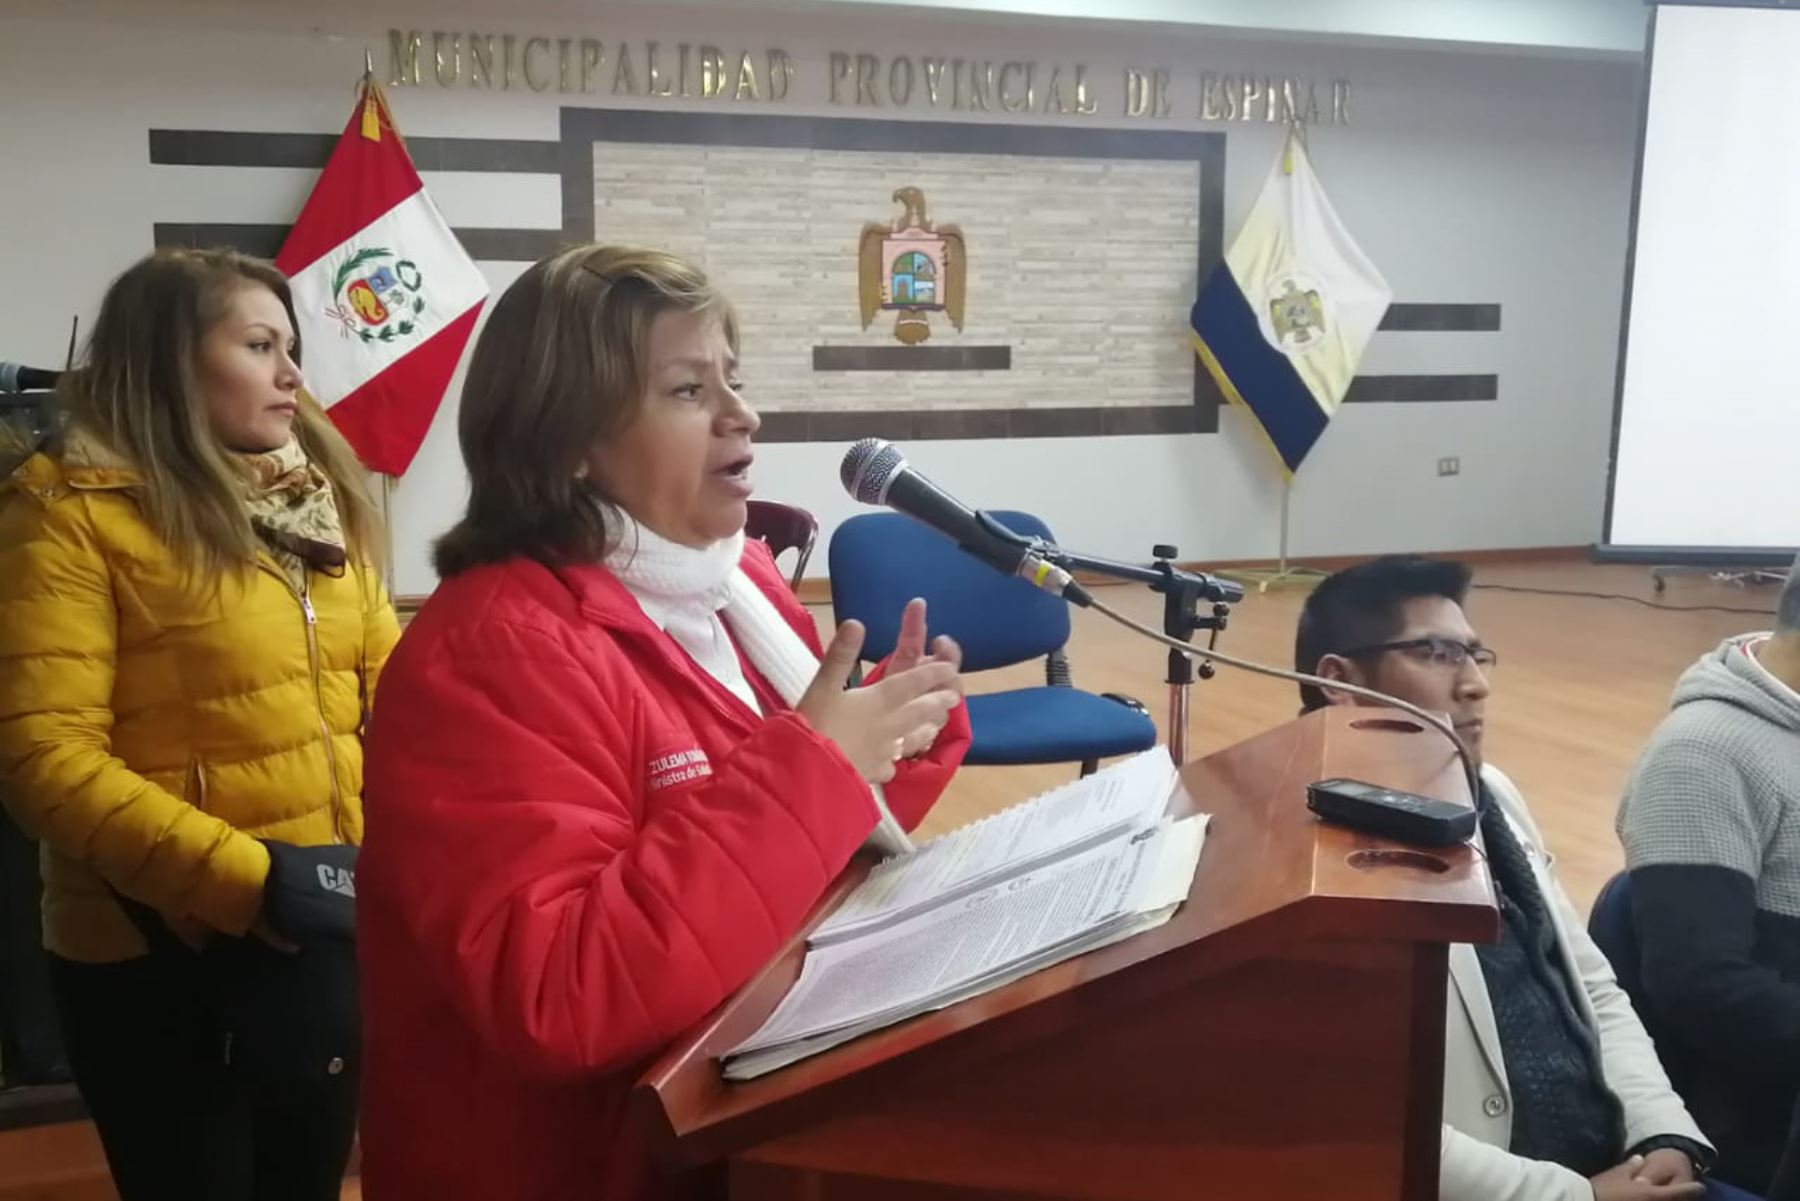 La ministra de Salud, Zulema Tomás, participó en mesa de diálogo con autoridades regionales y locales y dirigentes de la provincia de Espinar, región Cusco.